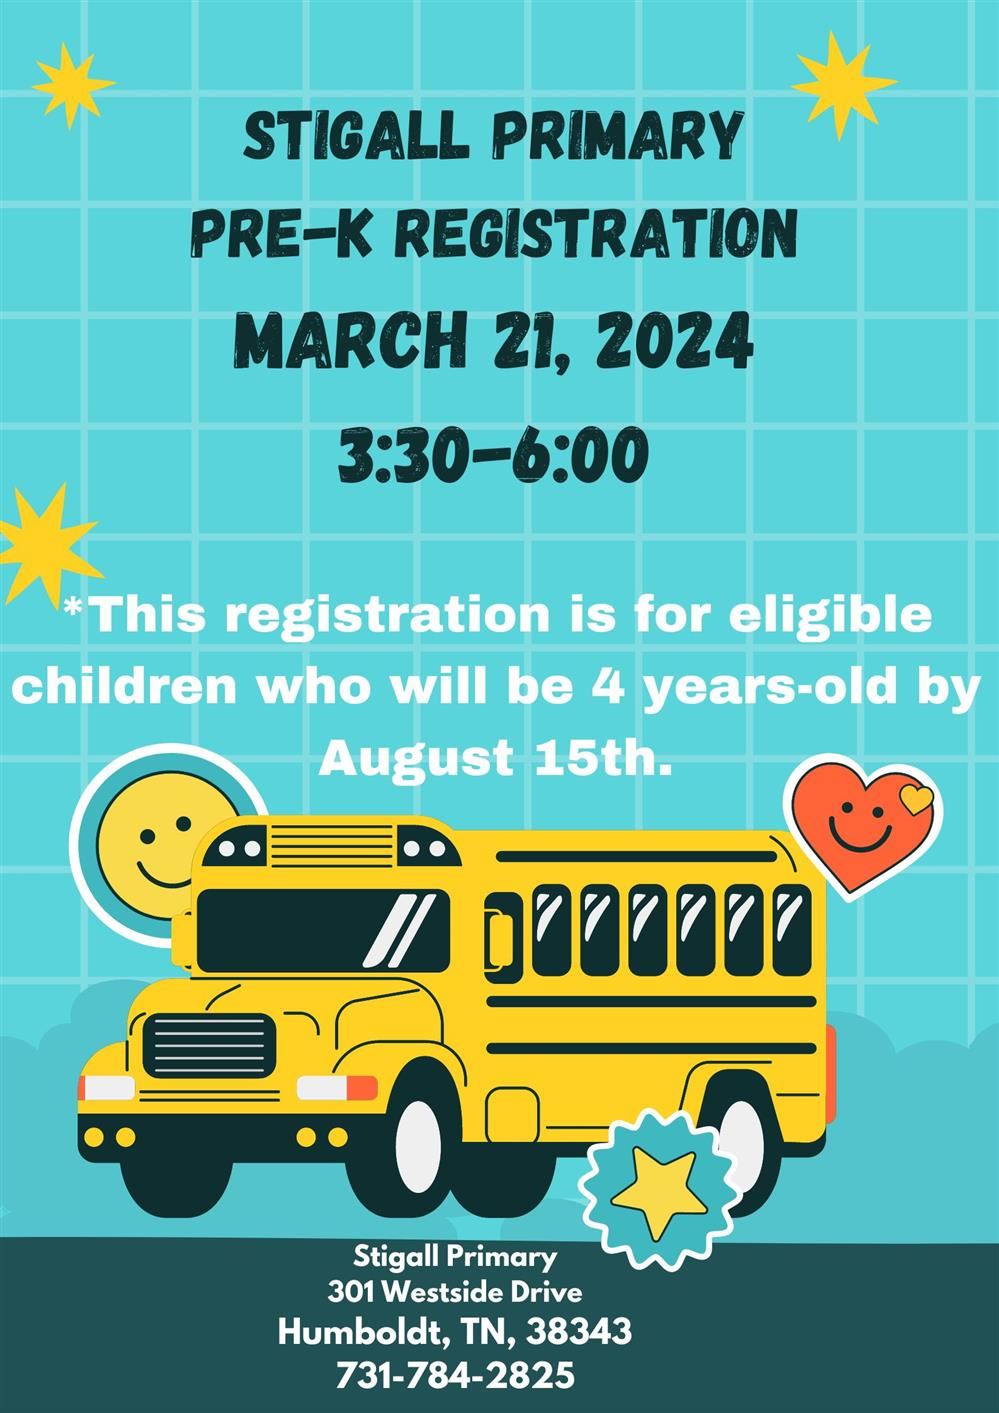 Pre-K Registration information